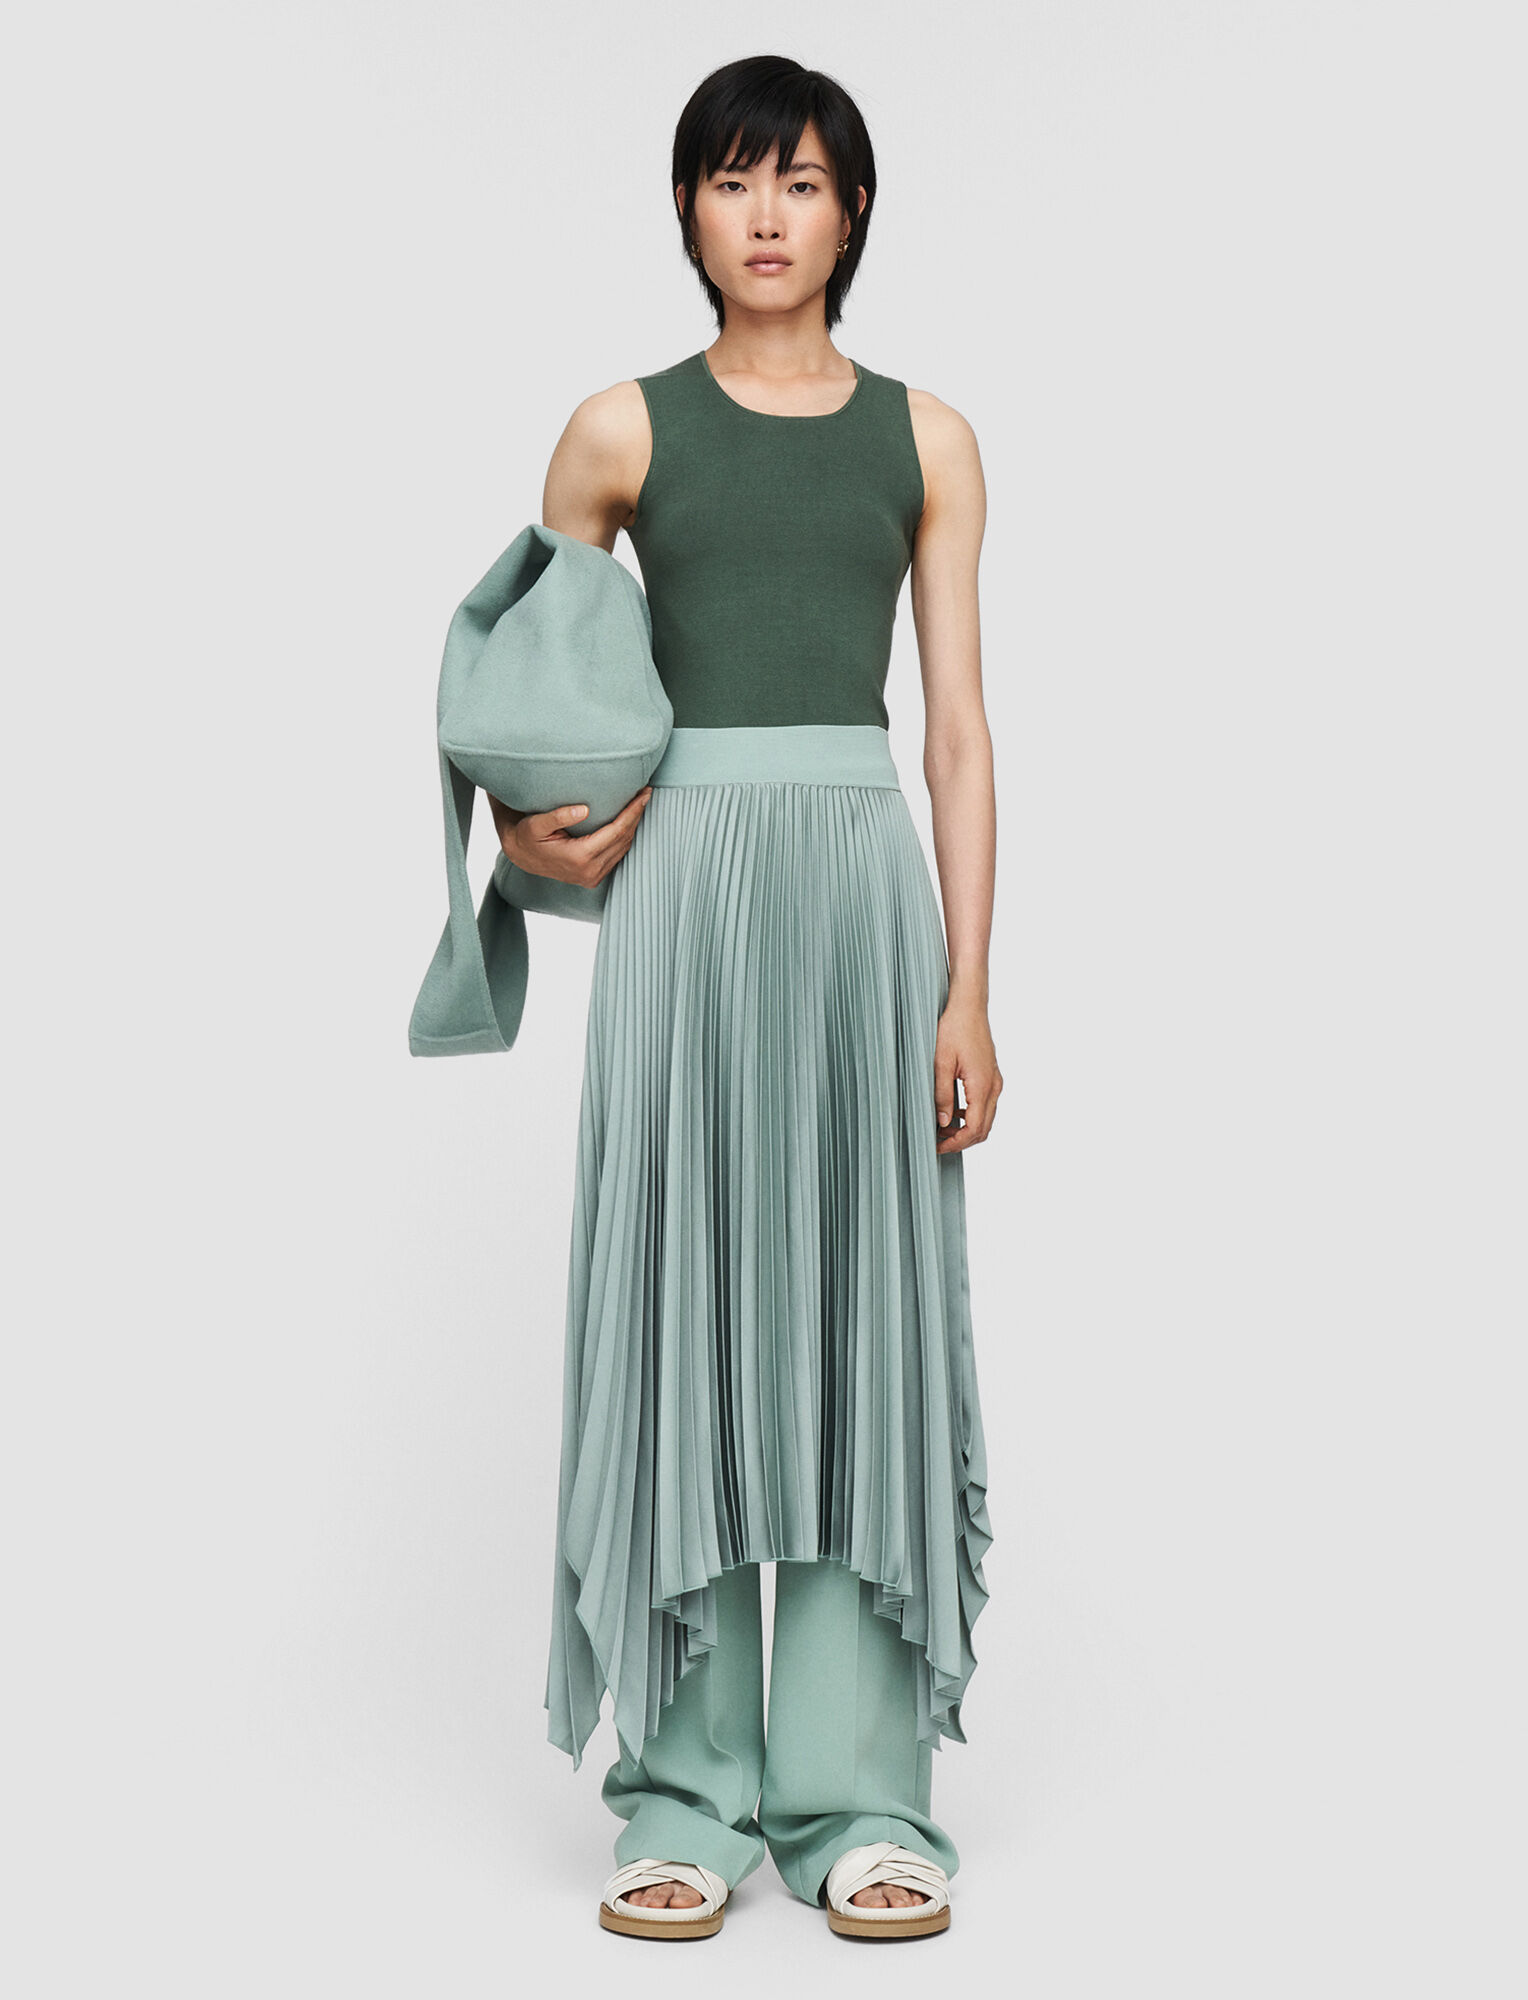 Joseph, Knit Weave Plisse Ade Skirt – Shorter Length, in Sage